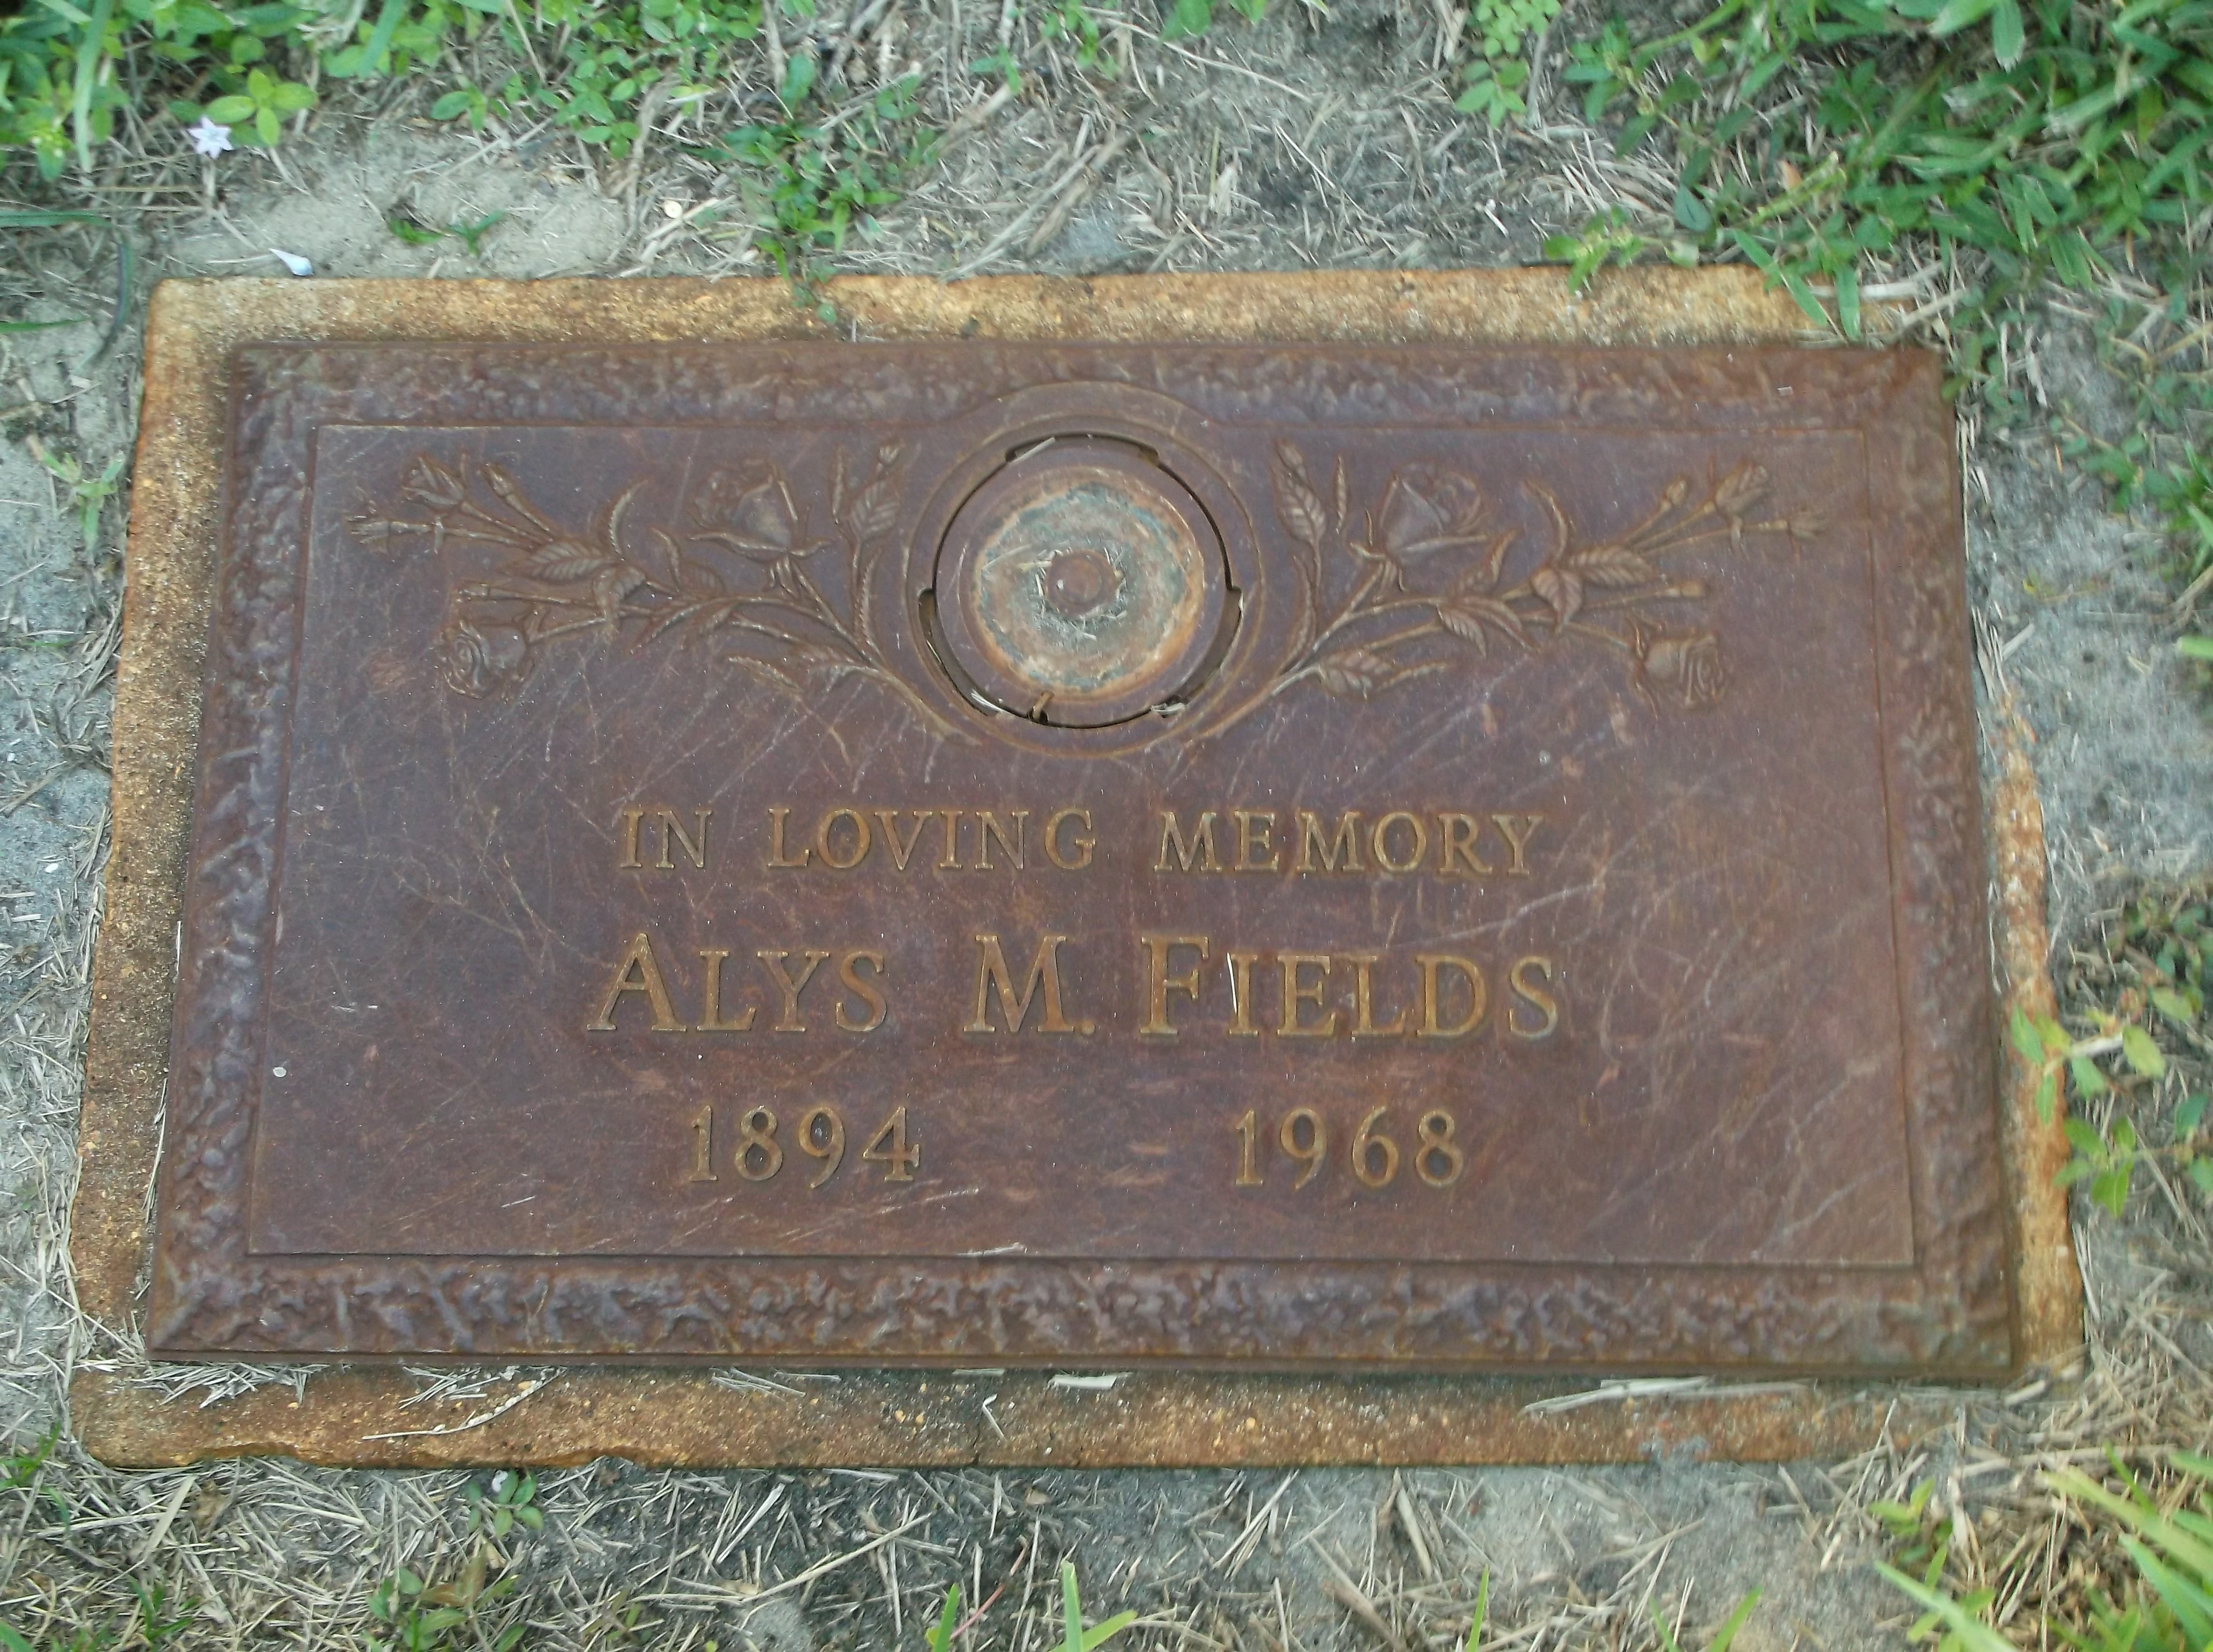 Alys M Fields